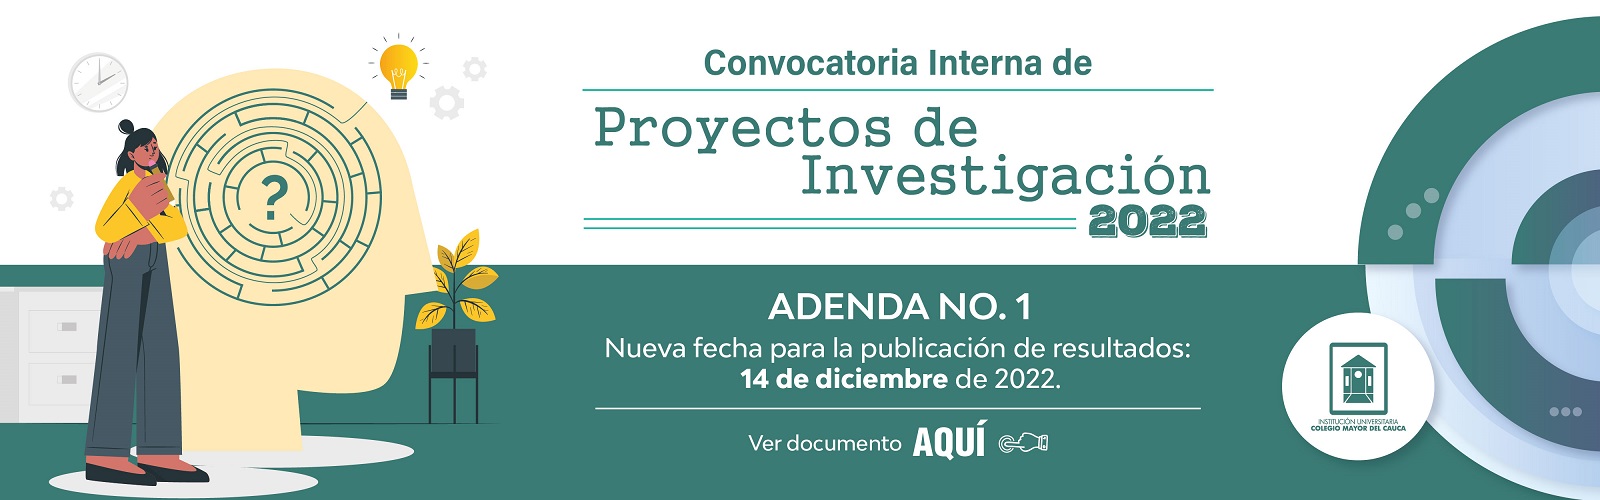 Adenda_01_Banner_Proyectos_de_Investigaciones_2022